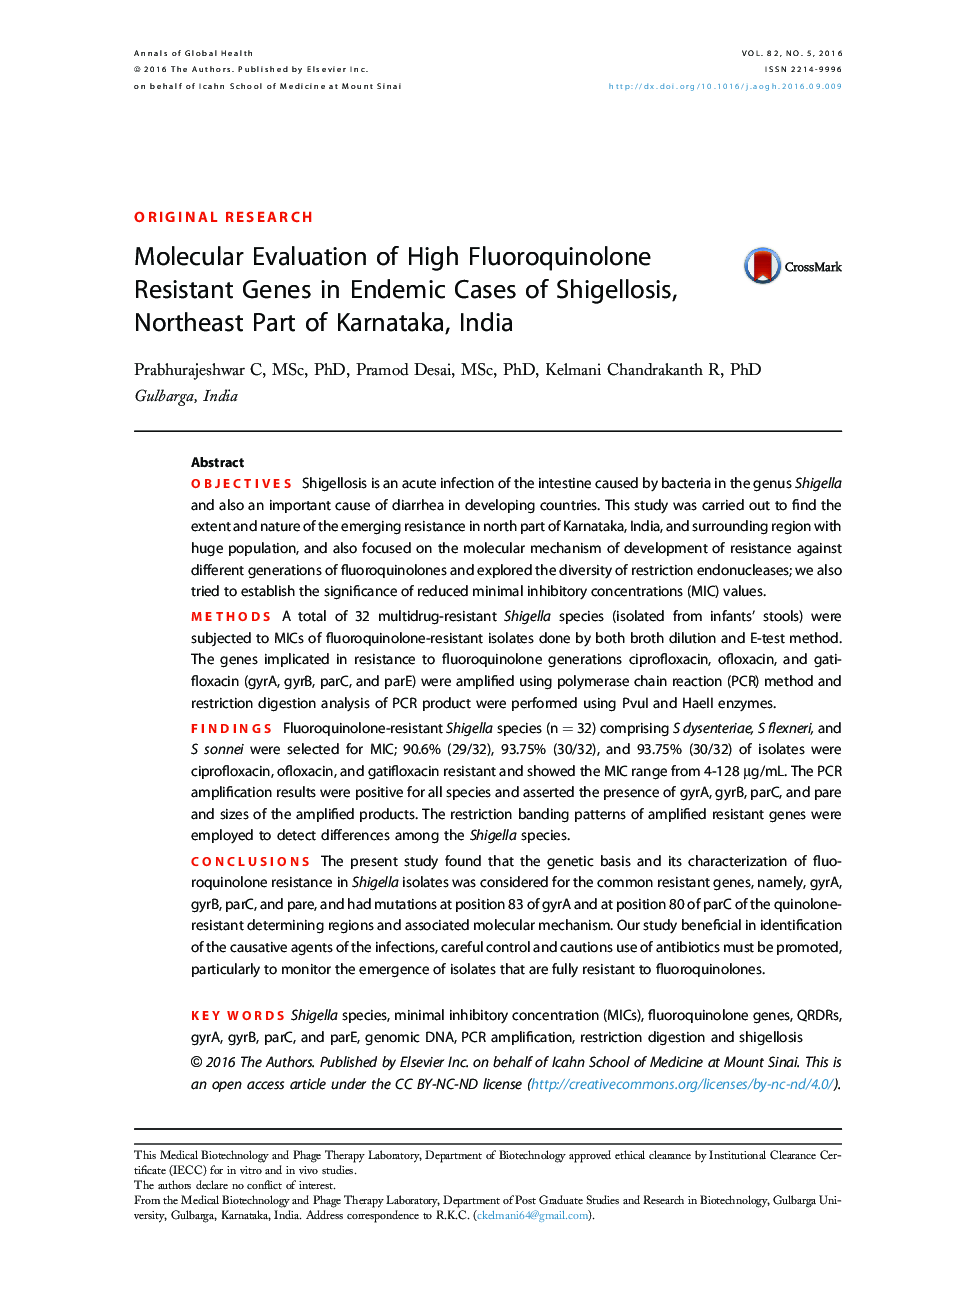 بررسی مولکولی ژنهای مقاوم در برابر فلوئوروکینولون بالا در موارد انحصاری شیگلوز، بخش شمال شرقی کارناتکا، هند 